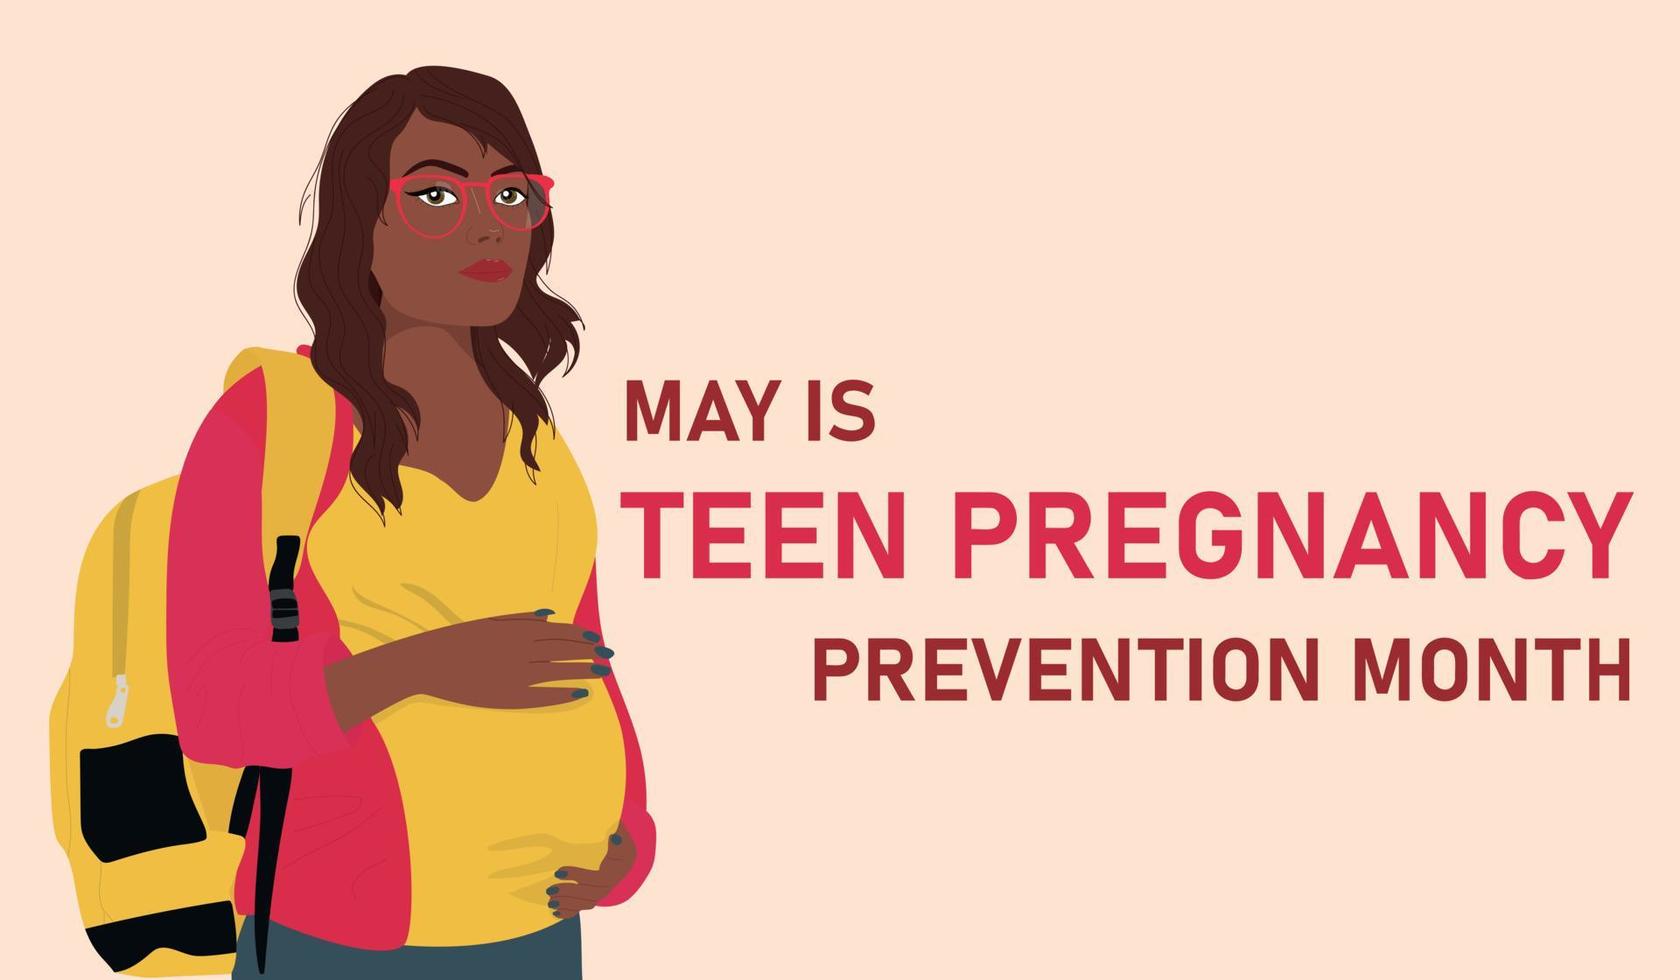 mayo es adolescente el embarazo prevención mes vector